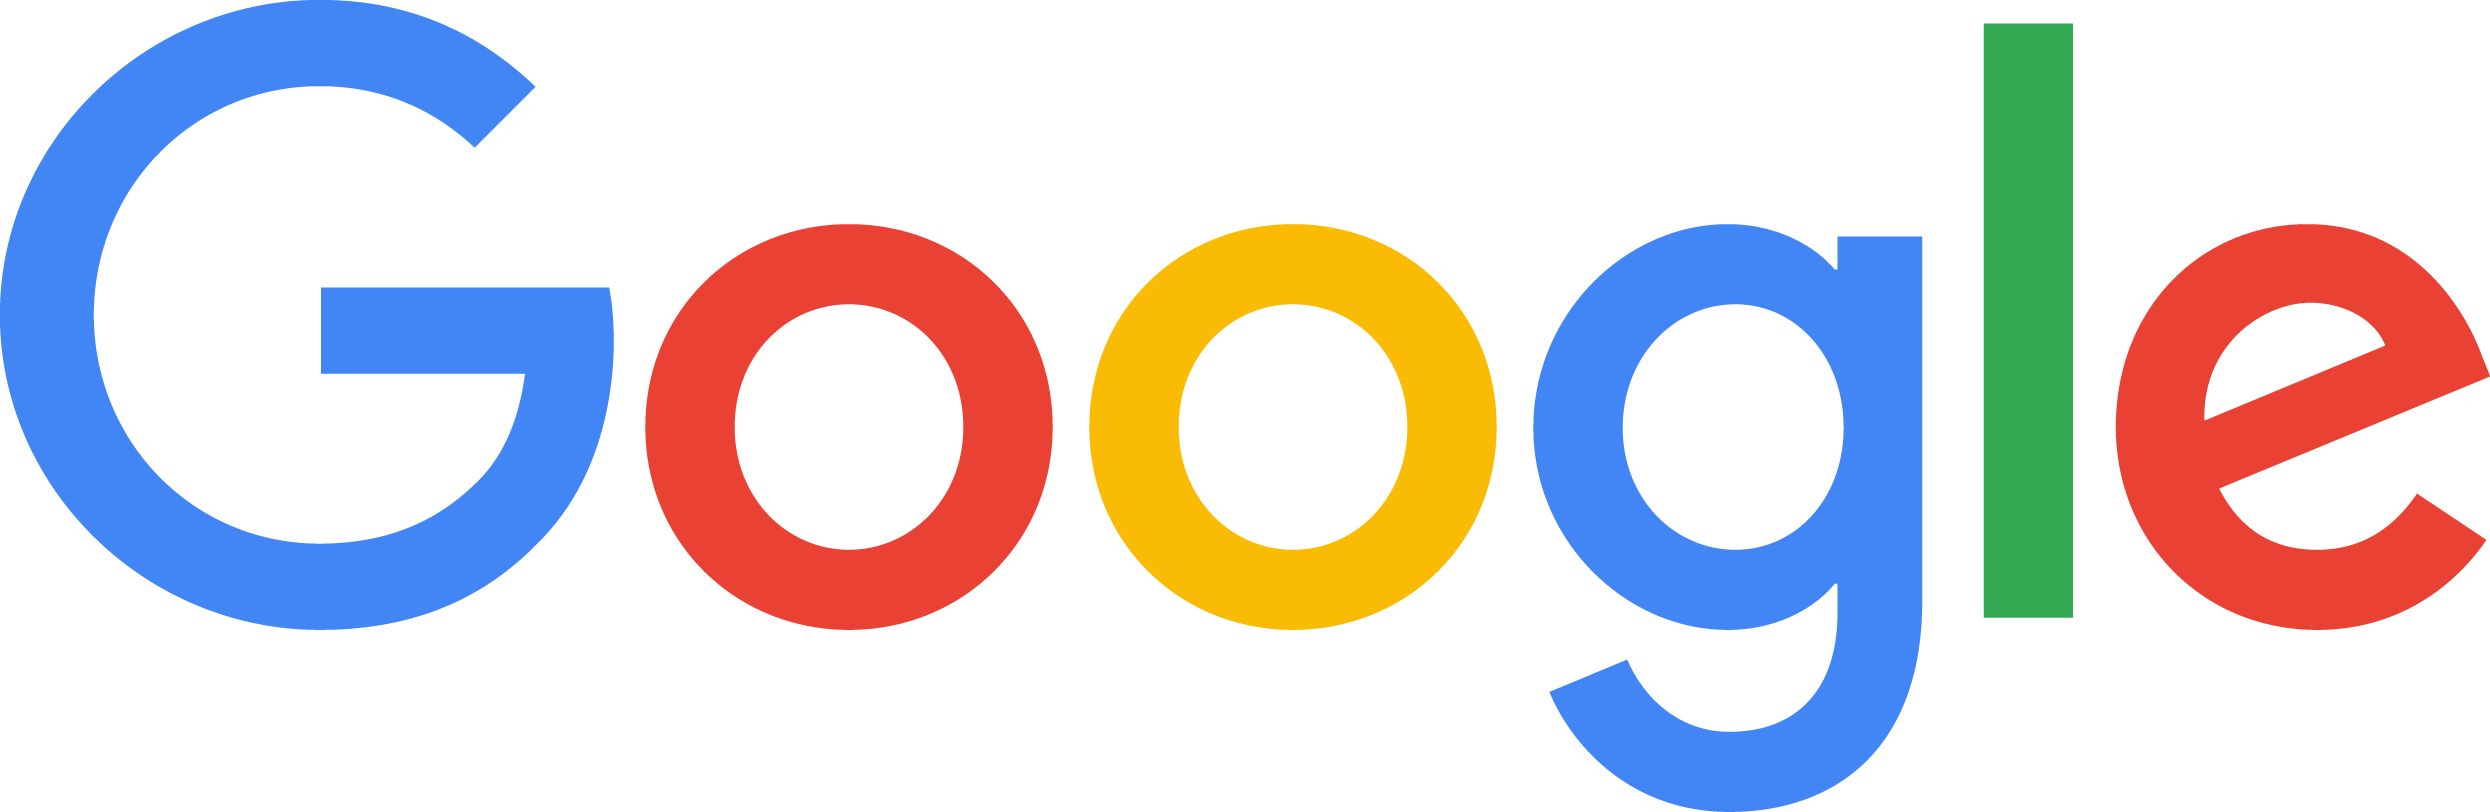 Google logo (gold sponsor)